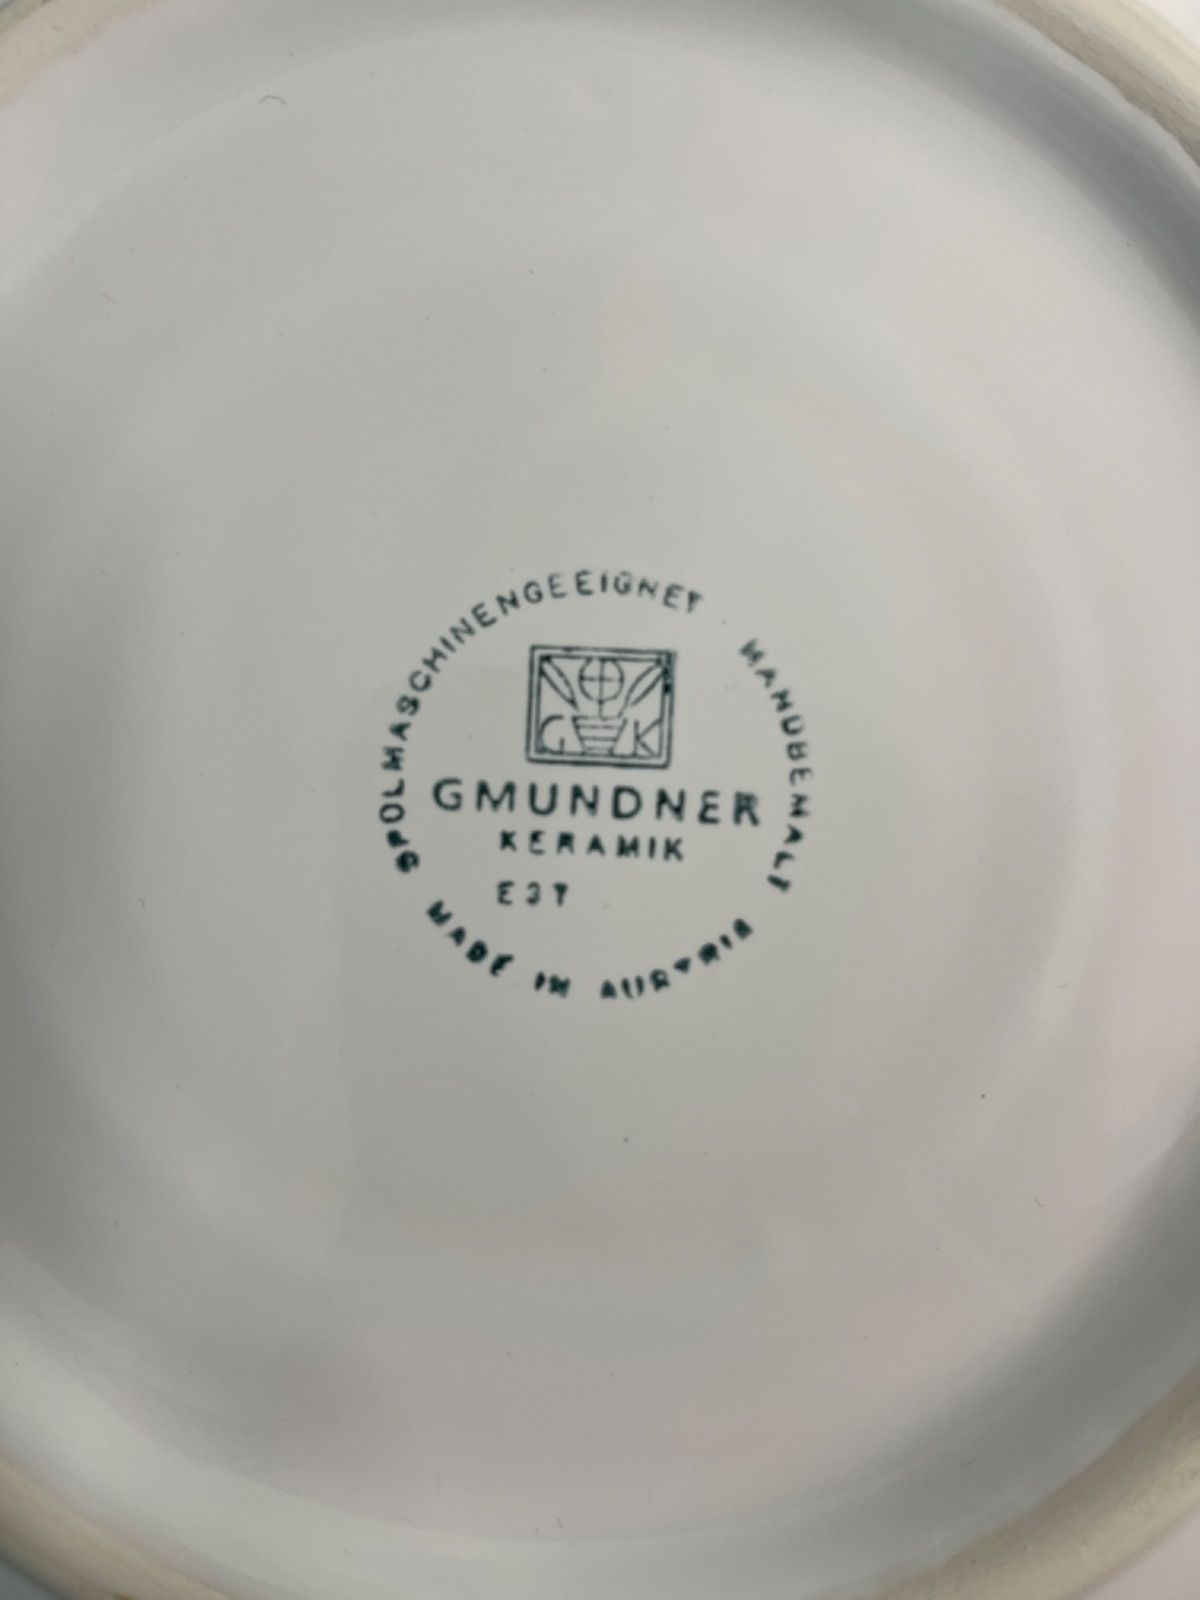 グムンドナー GMUNDNER 緑の小花 リボン付き ボウル 深皿 オーストリア 